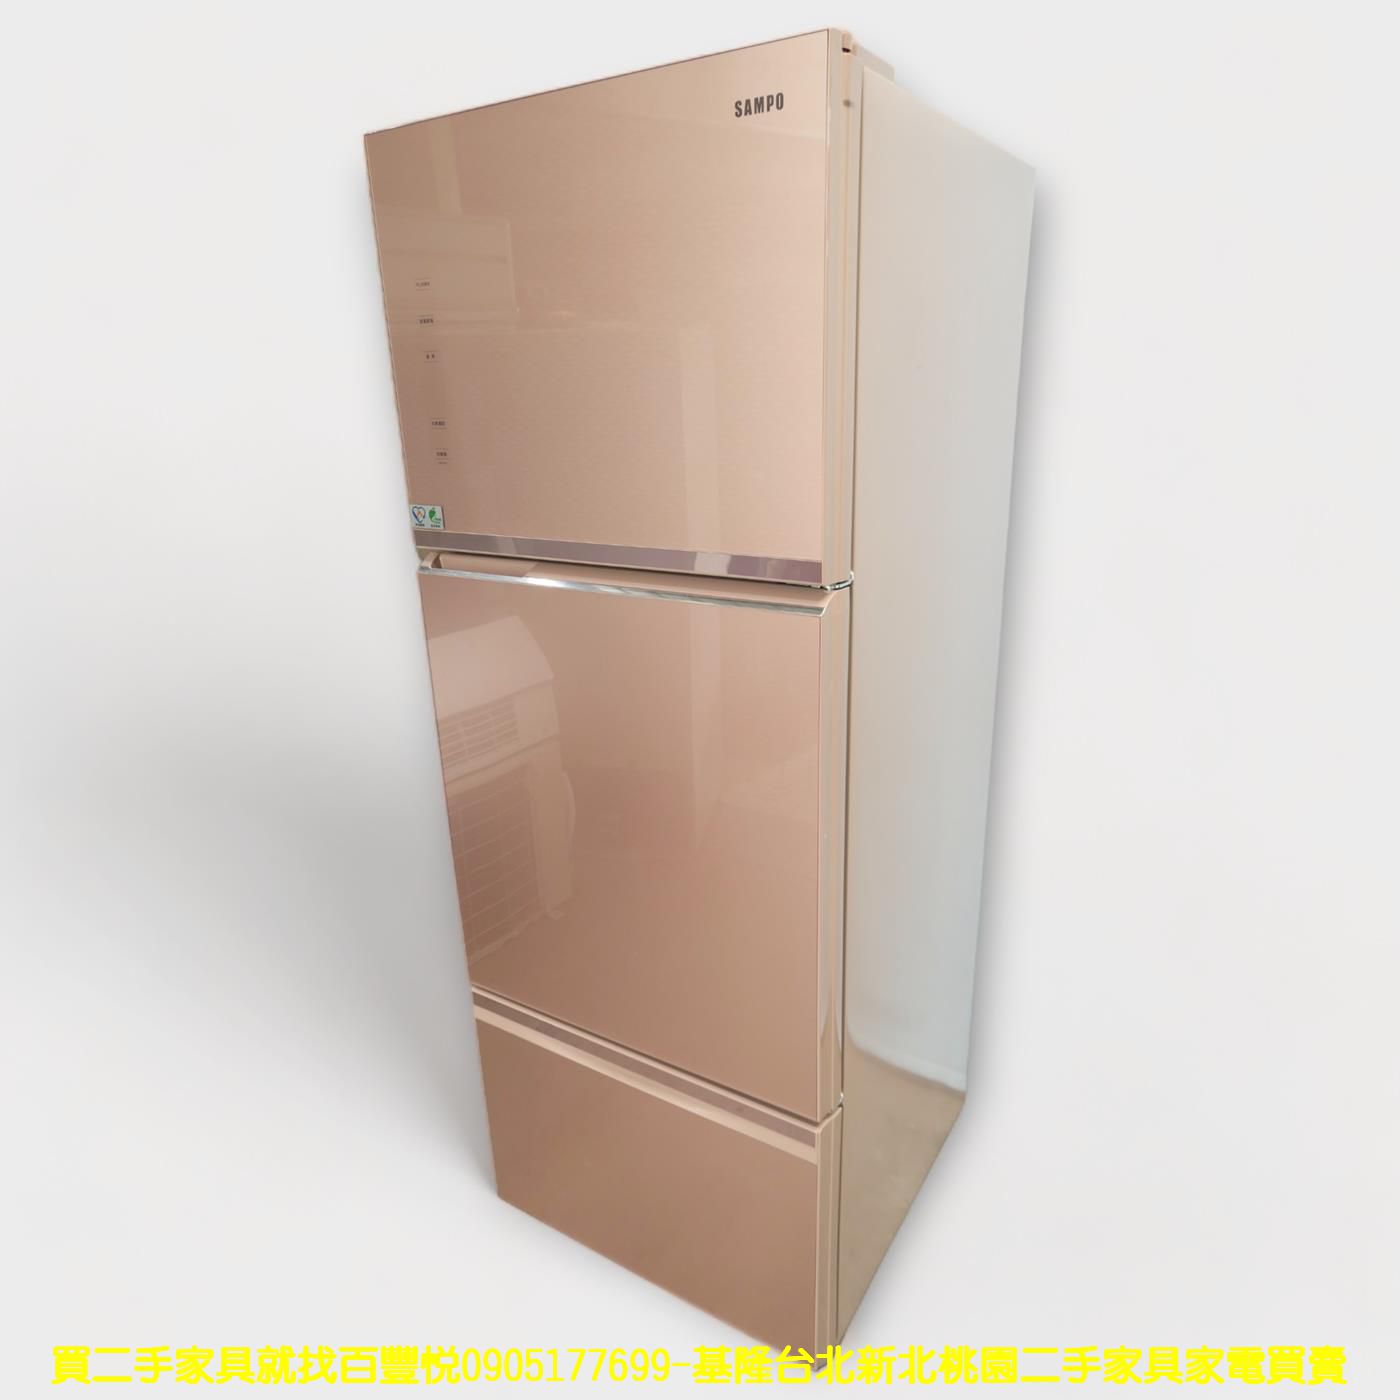 二手冰箱 聲寶 455公升 變頻一級 三門冰箱 大冰箱 大家電 中古電器 中古家電 2